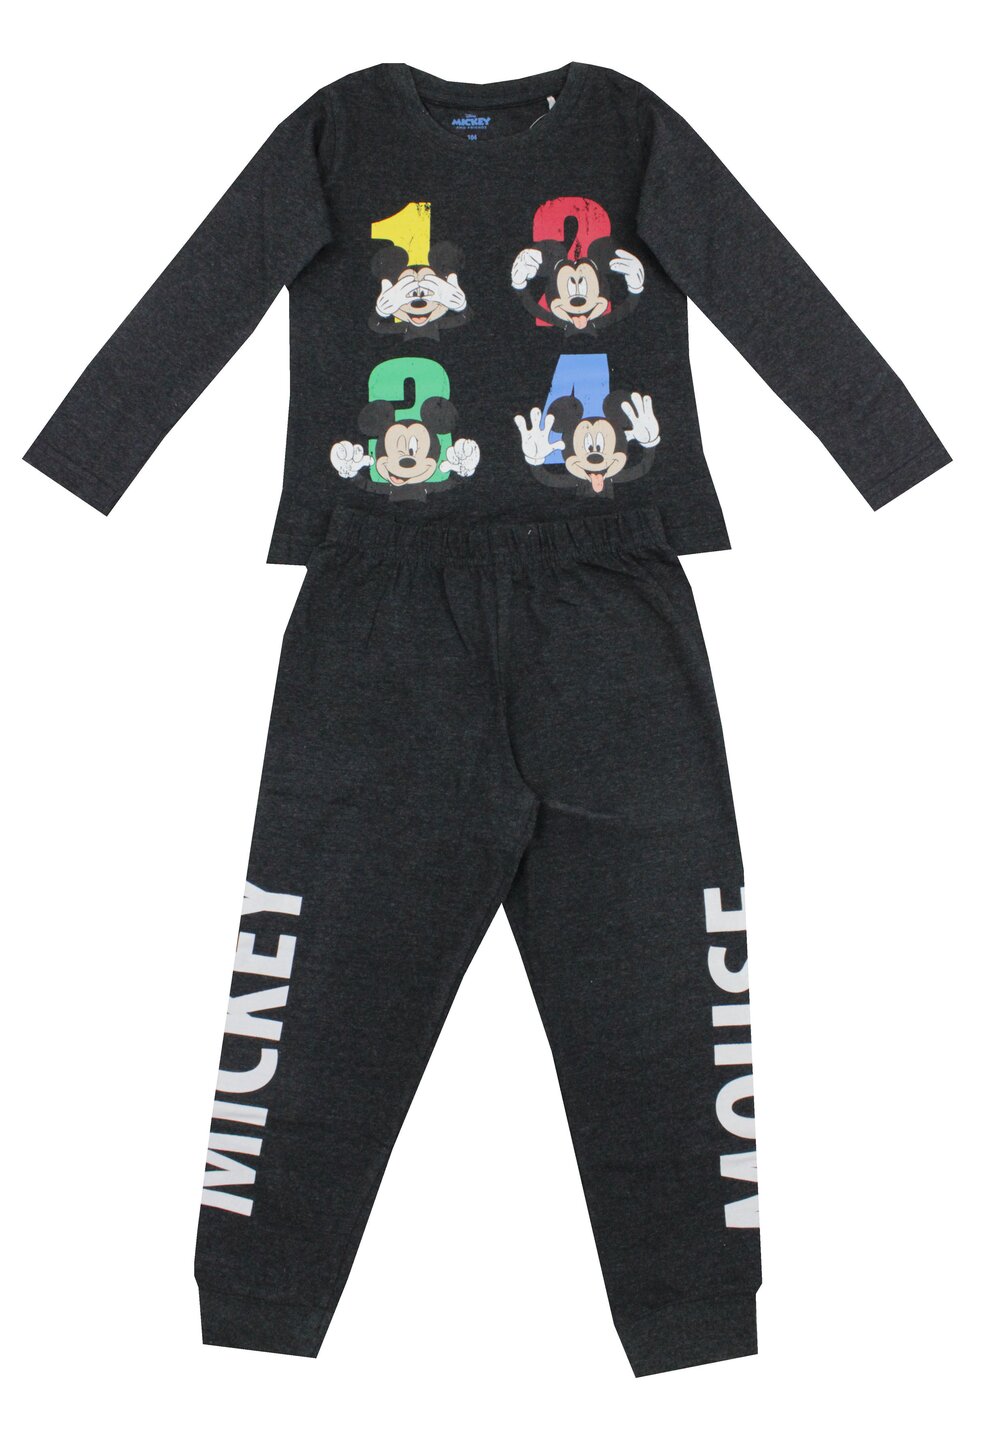 Pijama ML, bumbac, 1 2 3 4, Mickey Mouse, gri inchis baieti